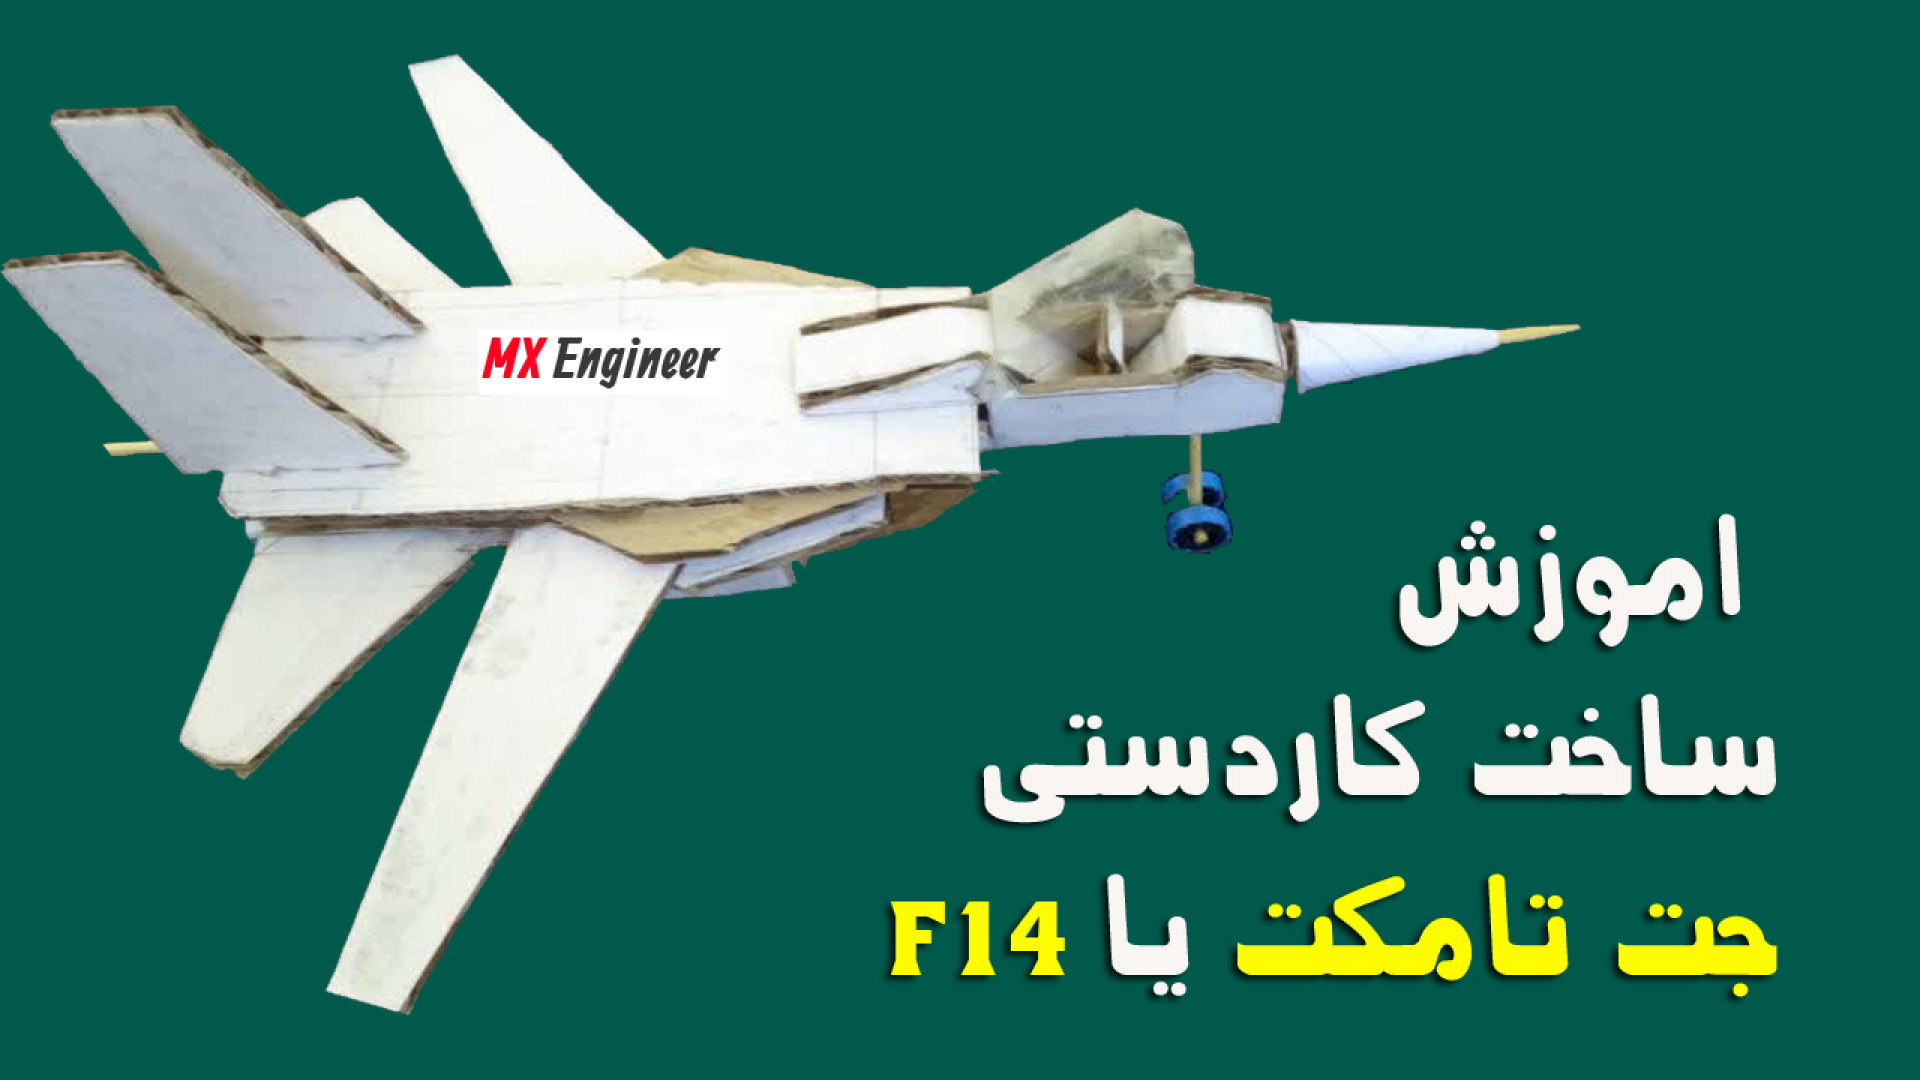 ساخت هواپیمای جنگنده مقوایی تامکت با f14 بال متحرک